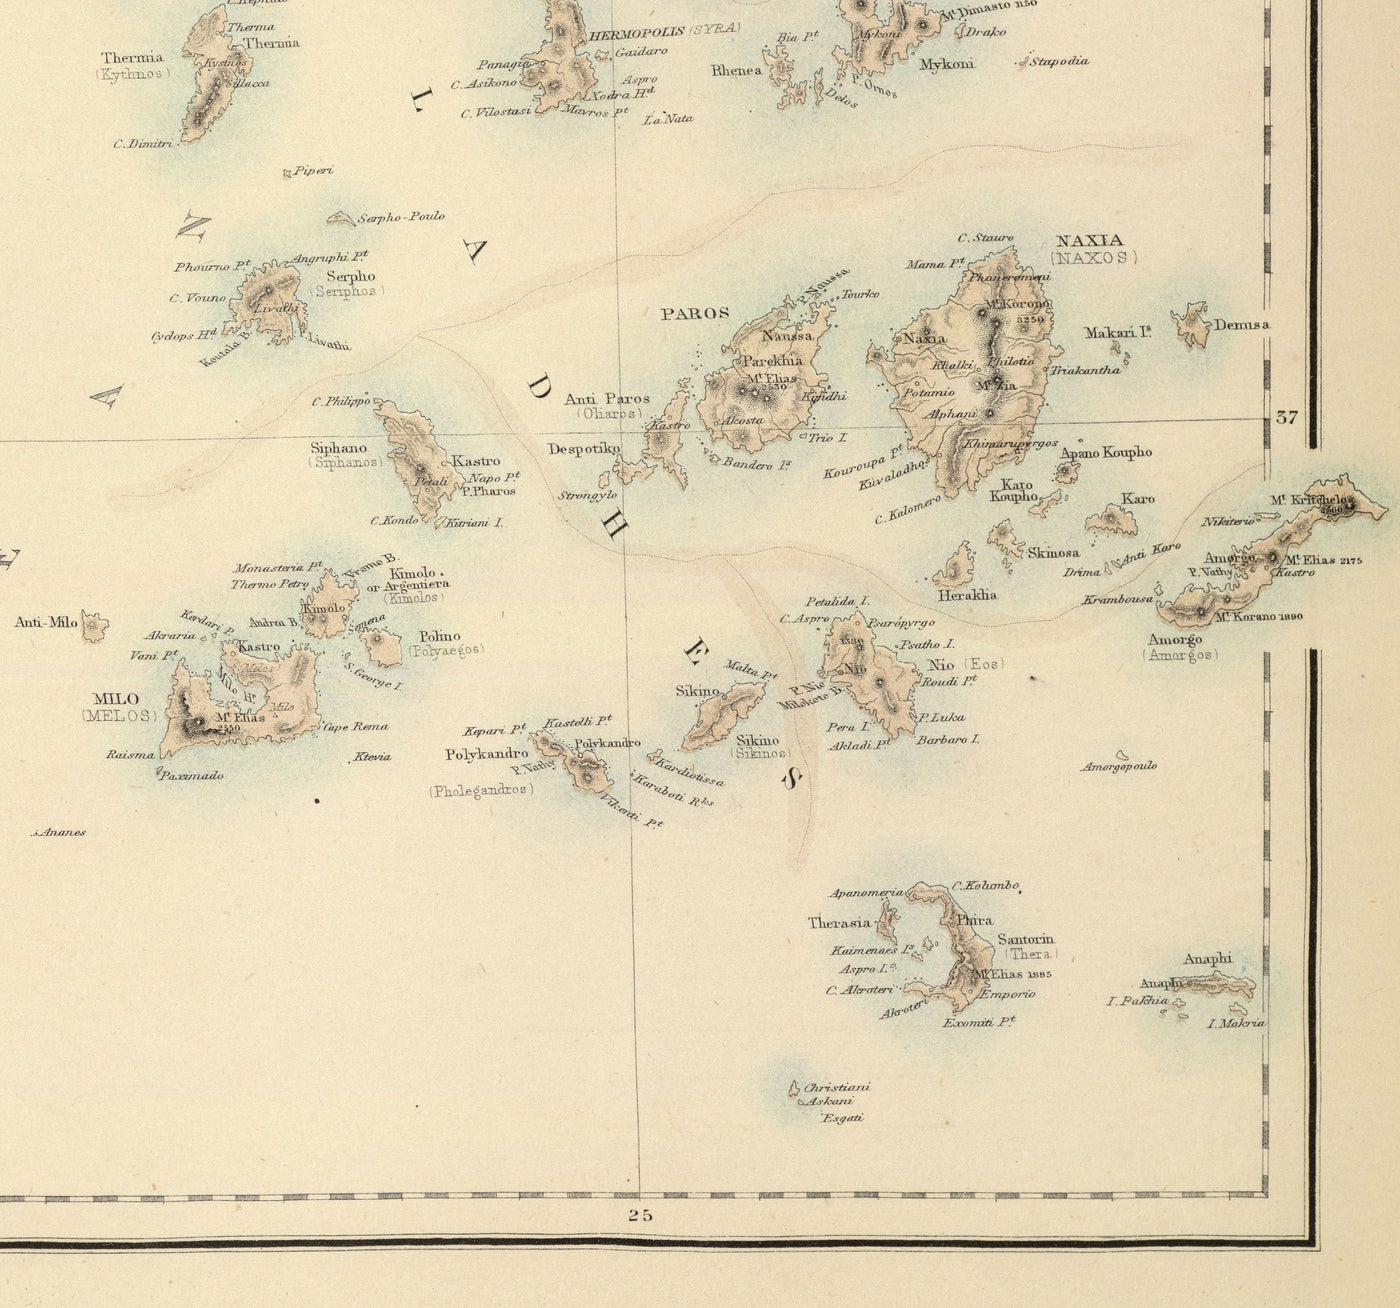 Alte Karte von Griechenland im Jahr 1872 von Archibald Fullarton - Athen, Piräus, Kalamata, Patras, Nafplion